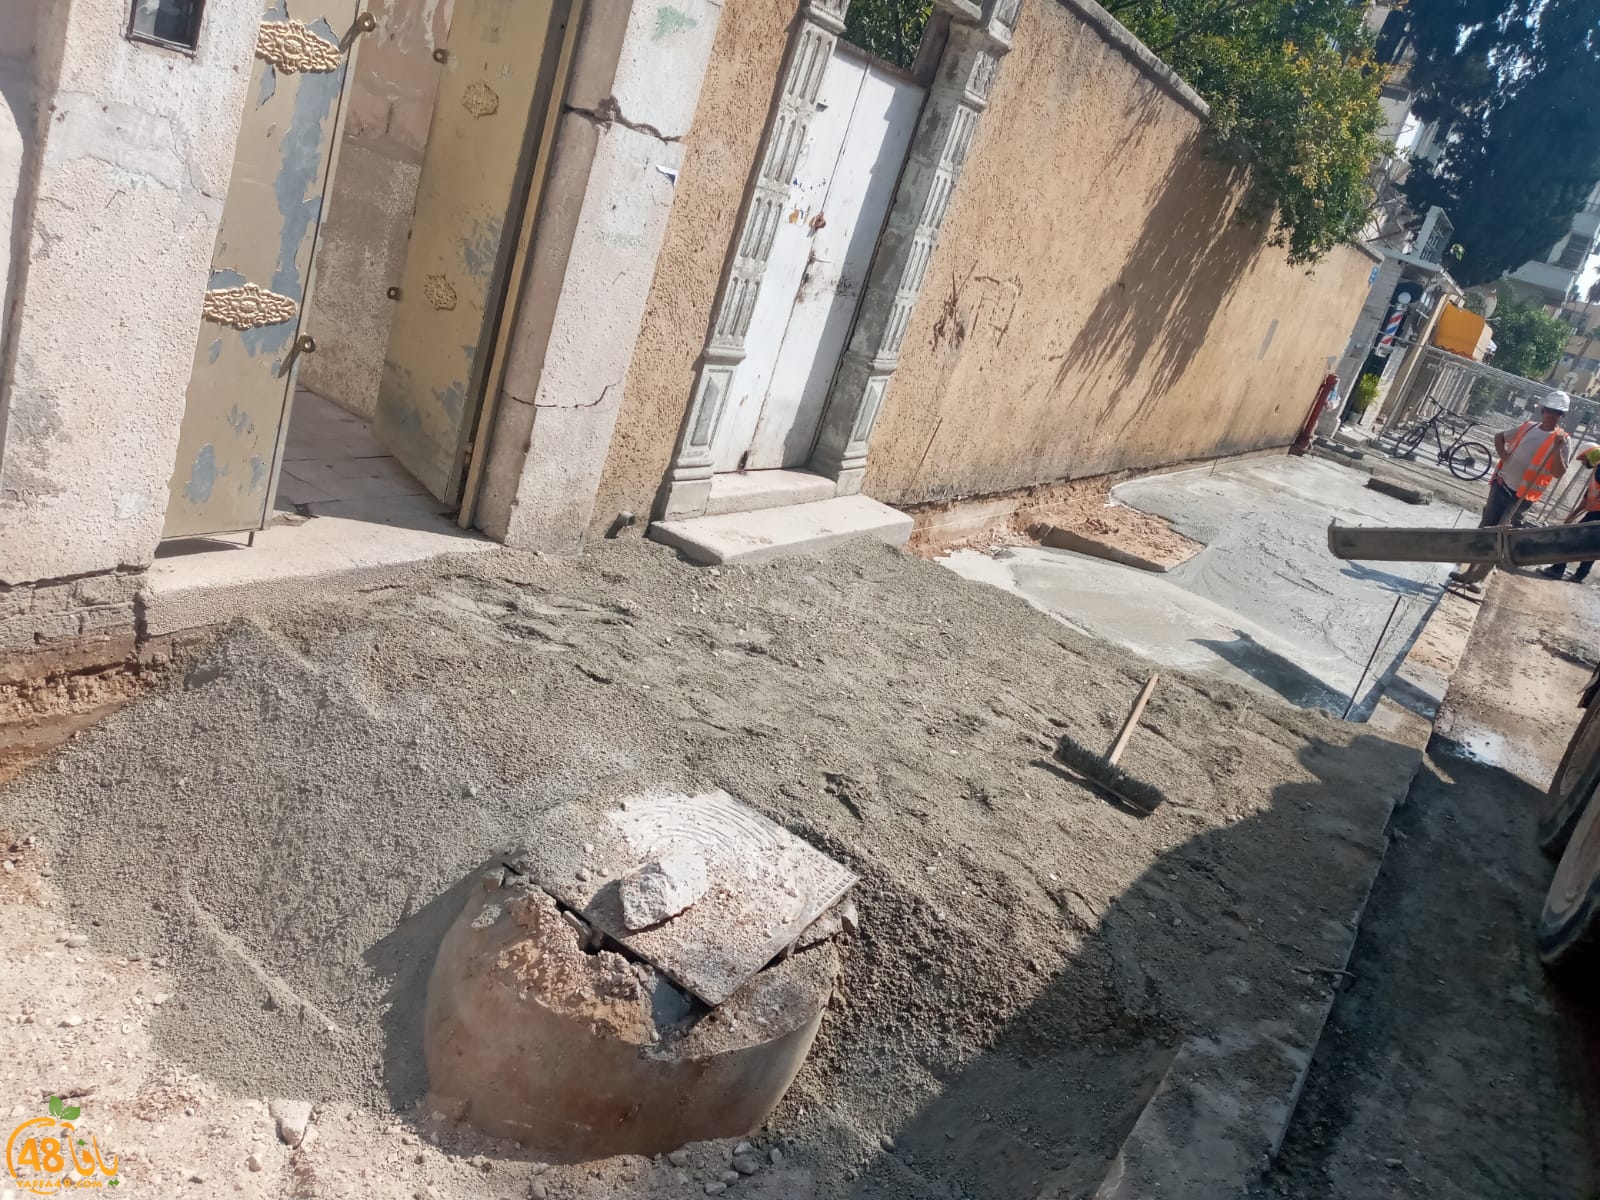  فيديو: تذّمر كبير للعائلات اليافاوية في شارع شديروت بسبب أعمال الحفريات